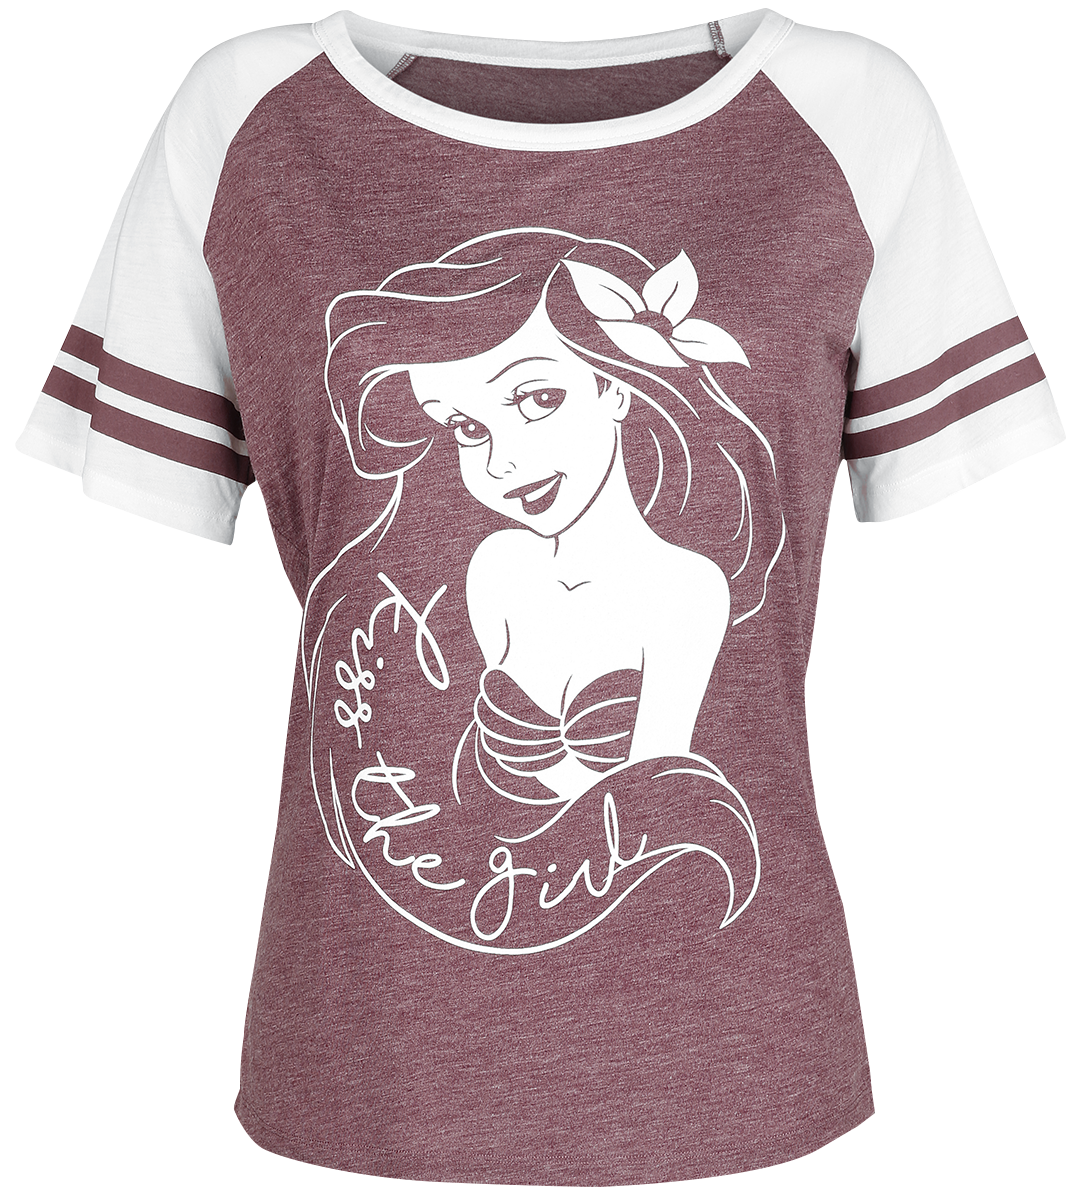 The Little Mermaid - Kiss The Girl - Girls shirt - mottled burgundy/white image